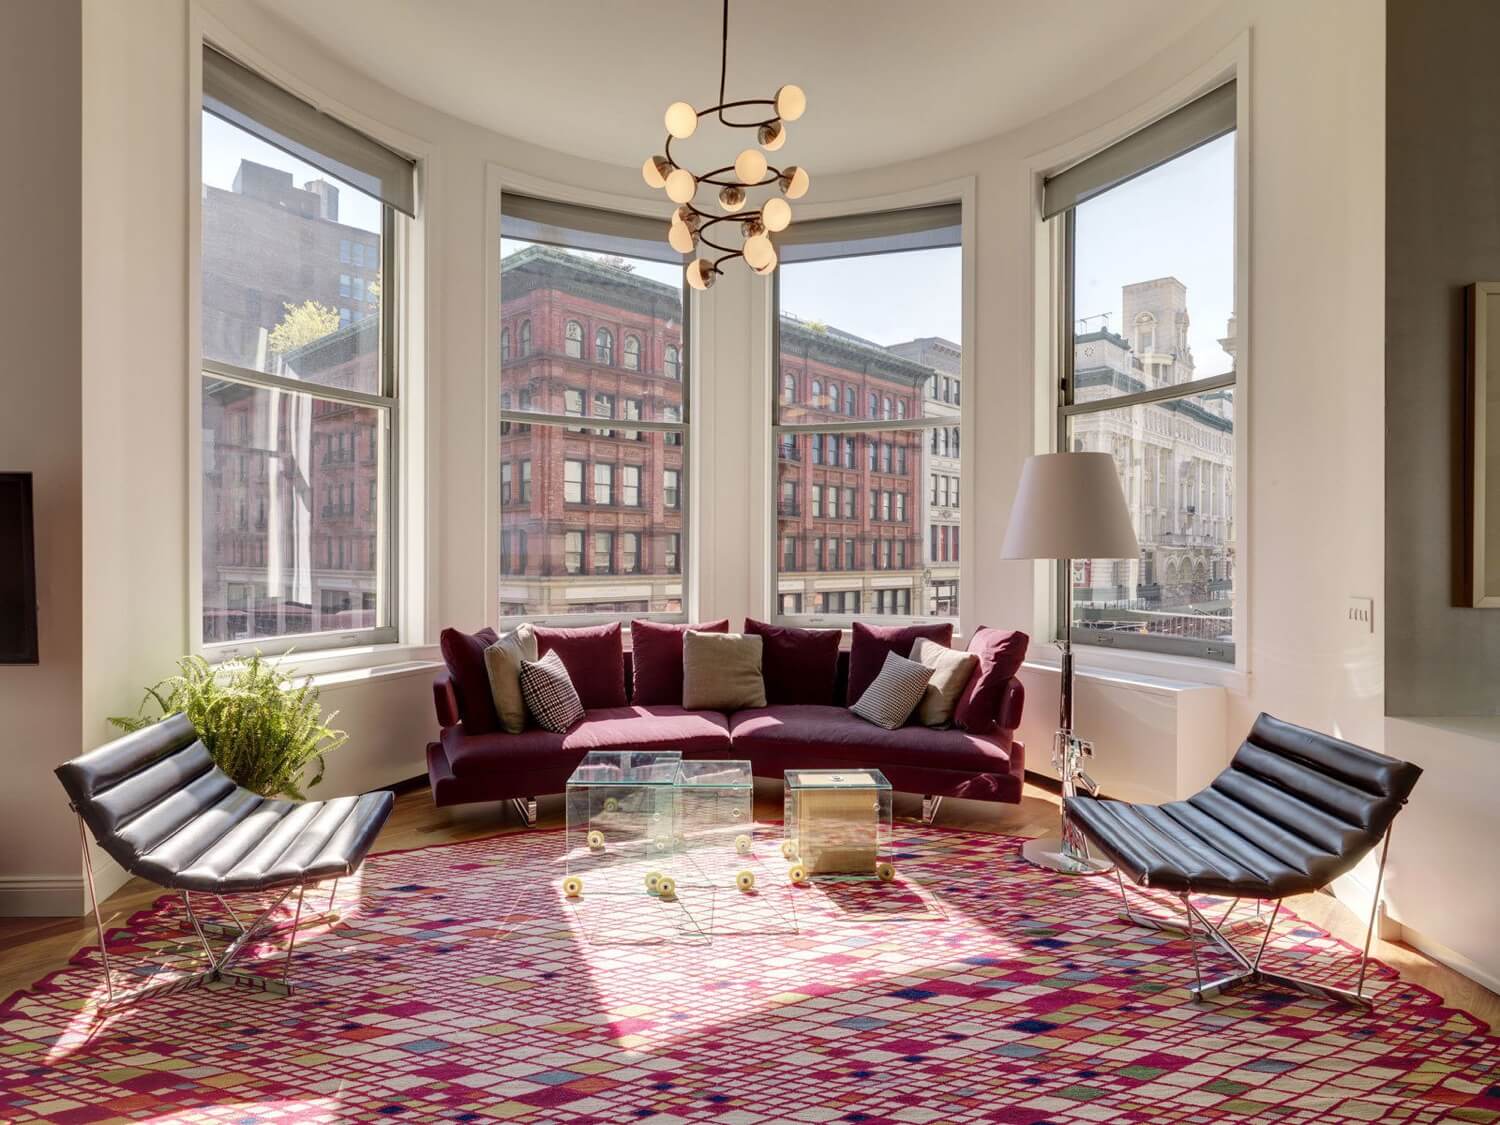 Aprende a combinar tu alfombra y sofá para tener un salón elegante 